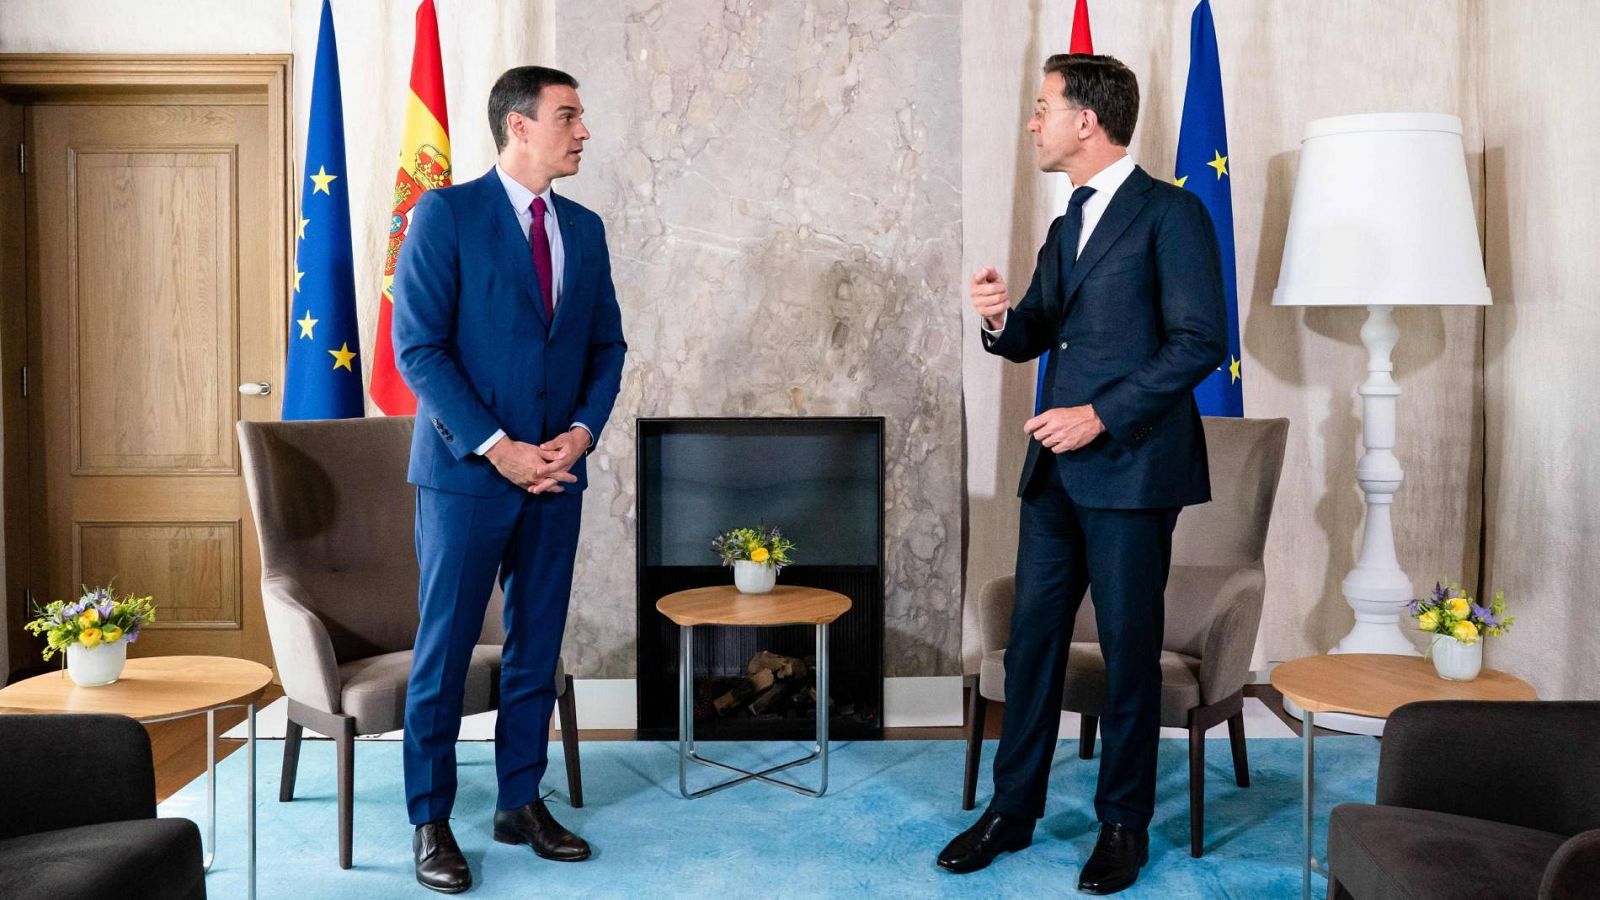 El presidente del Gobierno español, Pedro Sánchez, junto al primer ministro de Países Bajos, Mark Rutte, durante su visita en La Haya